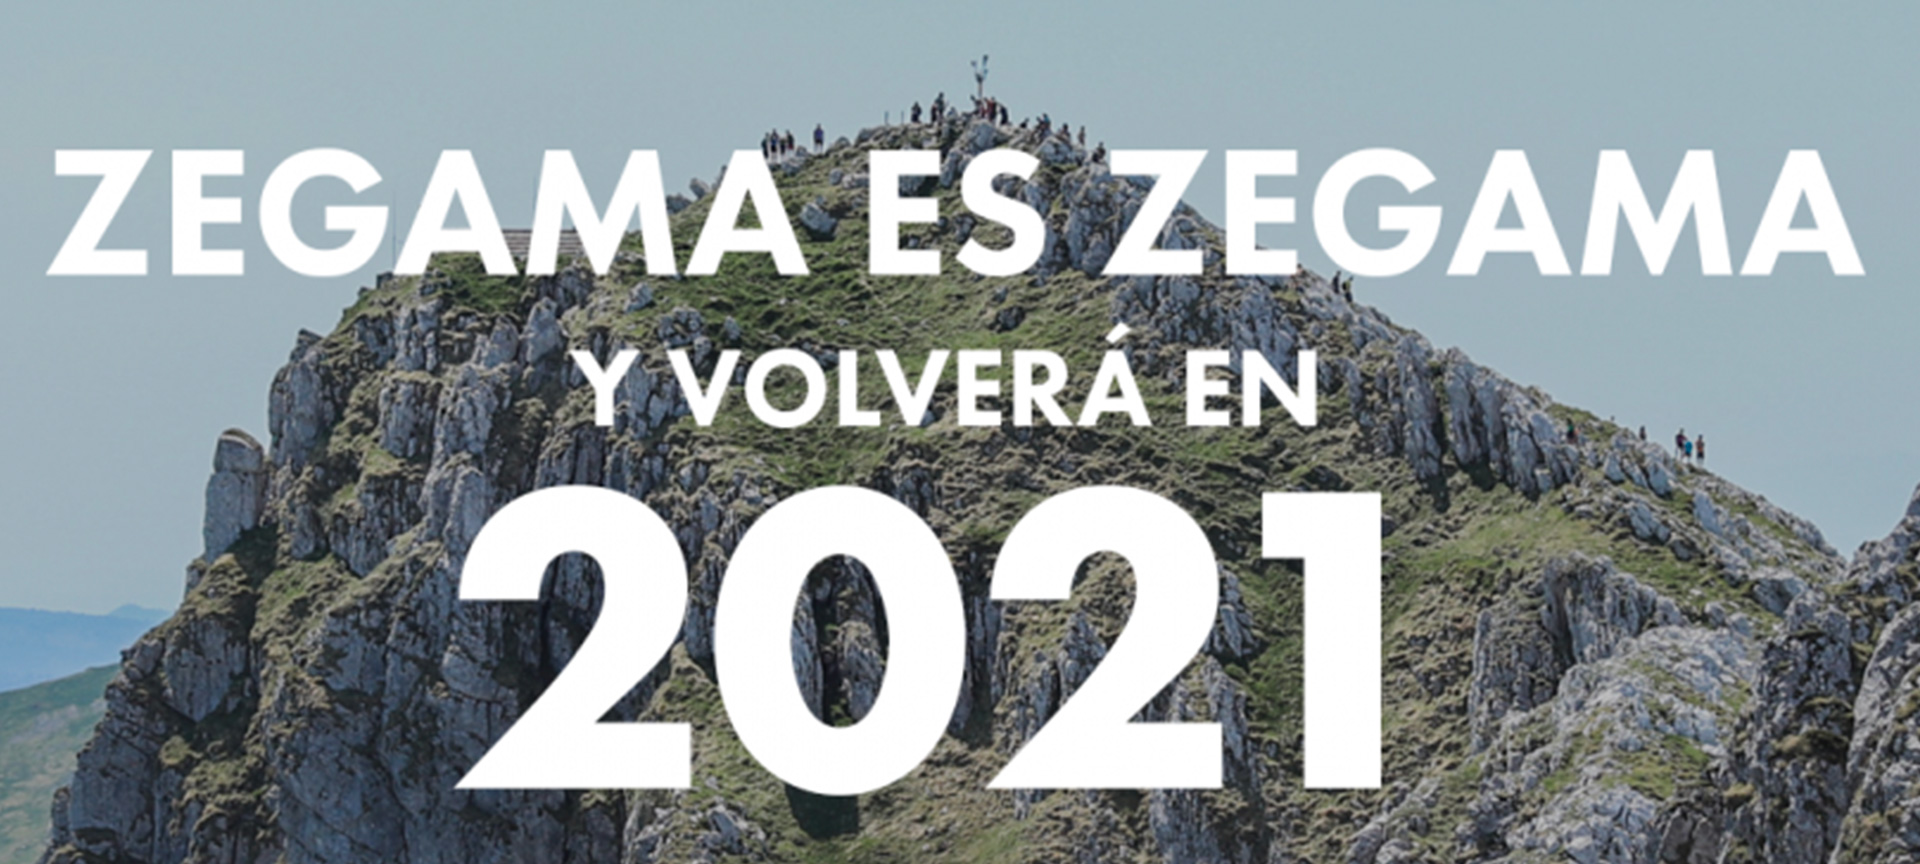 ¡La edición 2020 de la Zegama-Aizkorri se suspende!